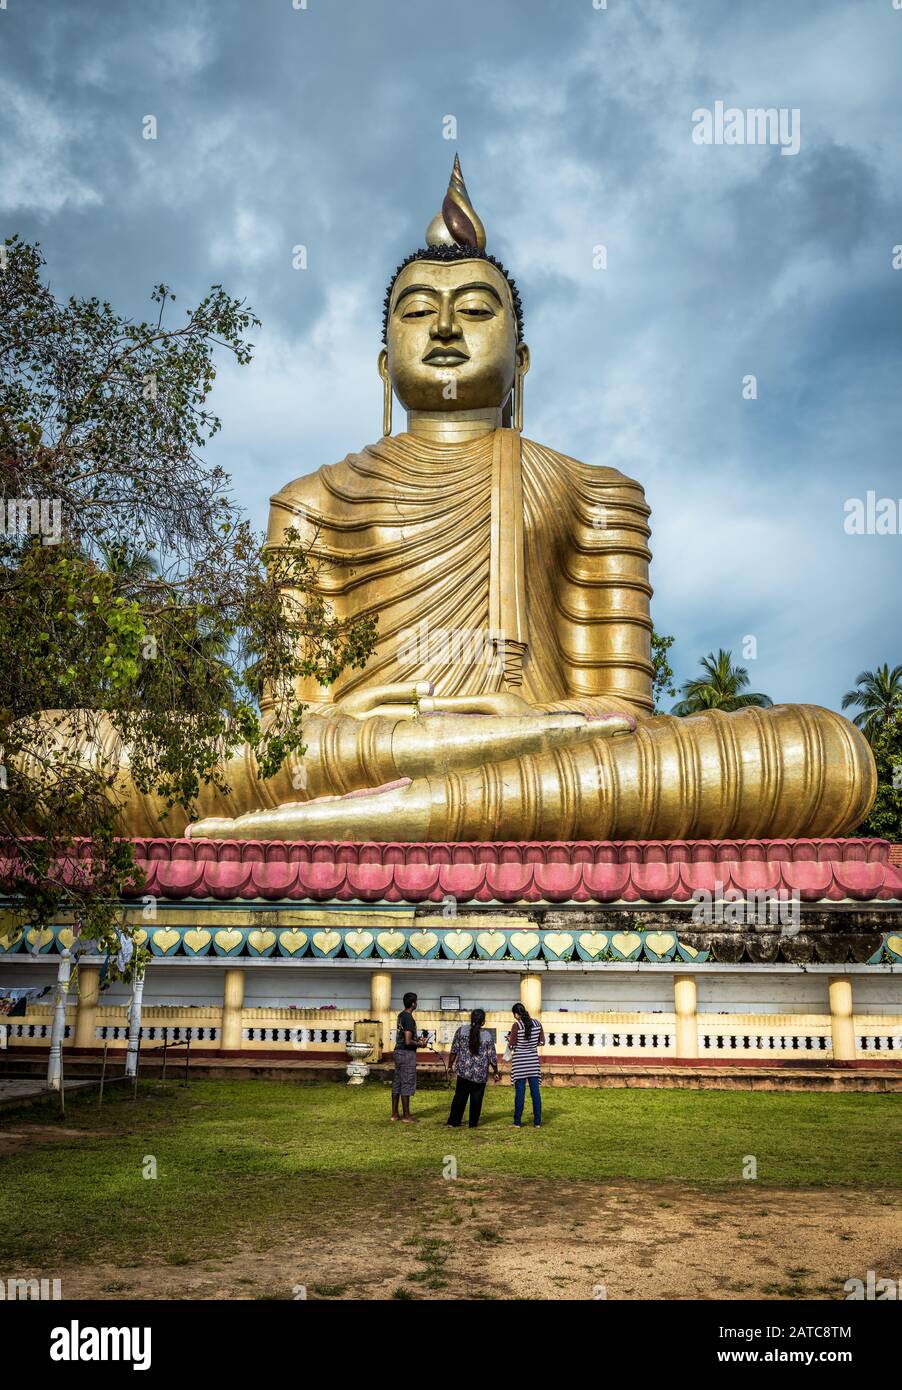 Dickwella, Sri Lanka - 4 novembre 2017: Grand Bouddha dans le vieux temple de Wewurukannala Vihara. Une statue de Bouddha assis de 50 m de haut est la plus grande de Sri Lank Banque D'Images